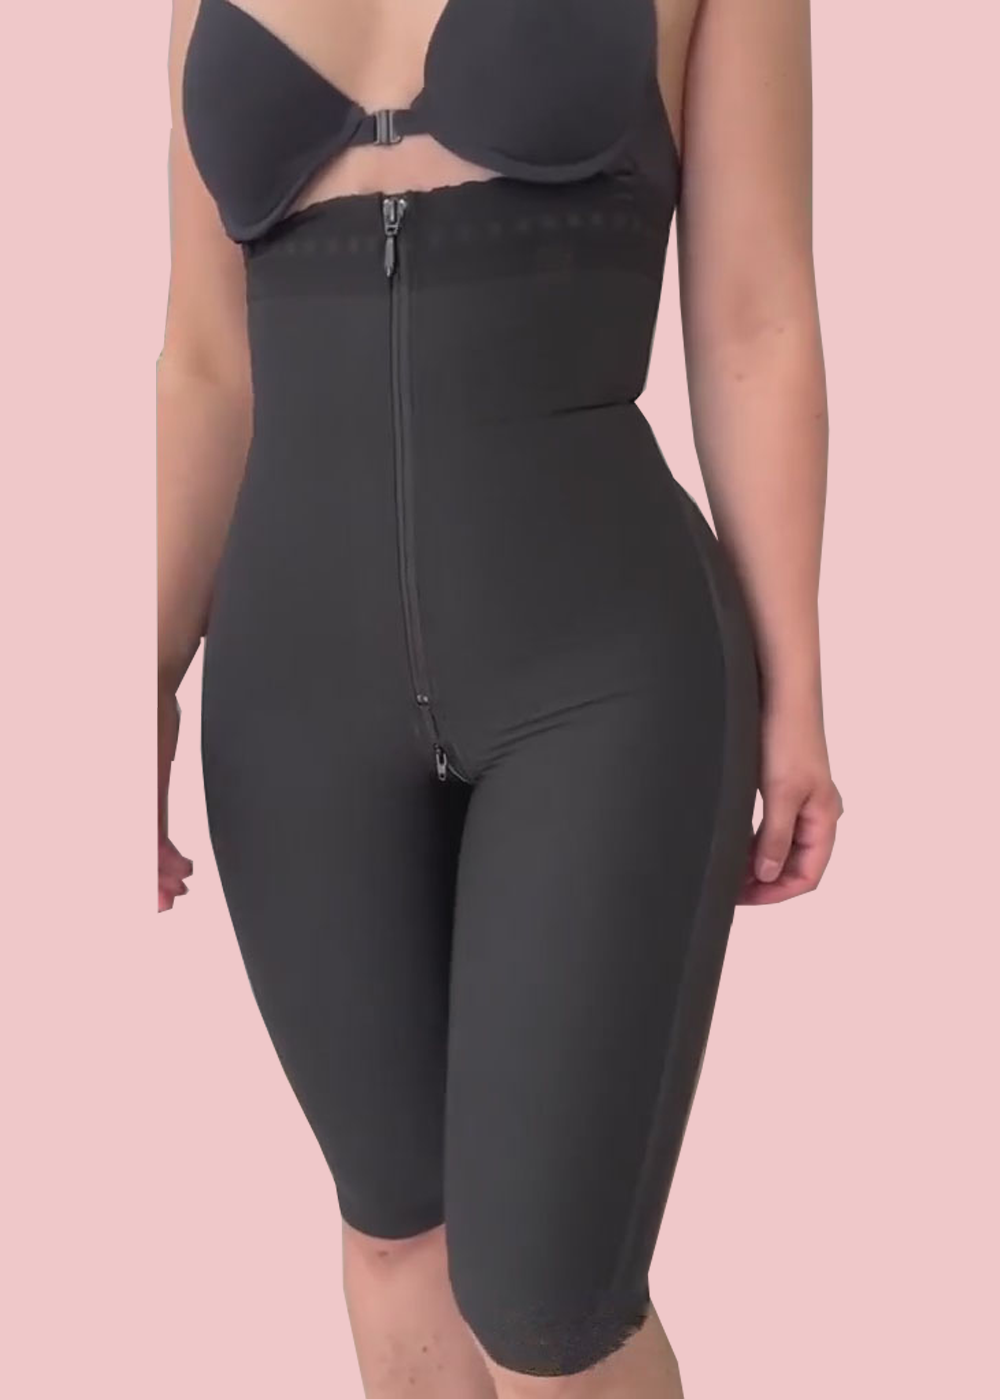 Corset Tummy Control Panties Shapewear For Women Tummy Control Fajas  Colombianas Body Shaper Zipper Open Bust Bodysuit